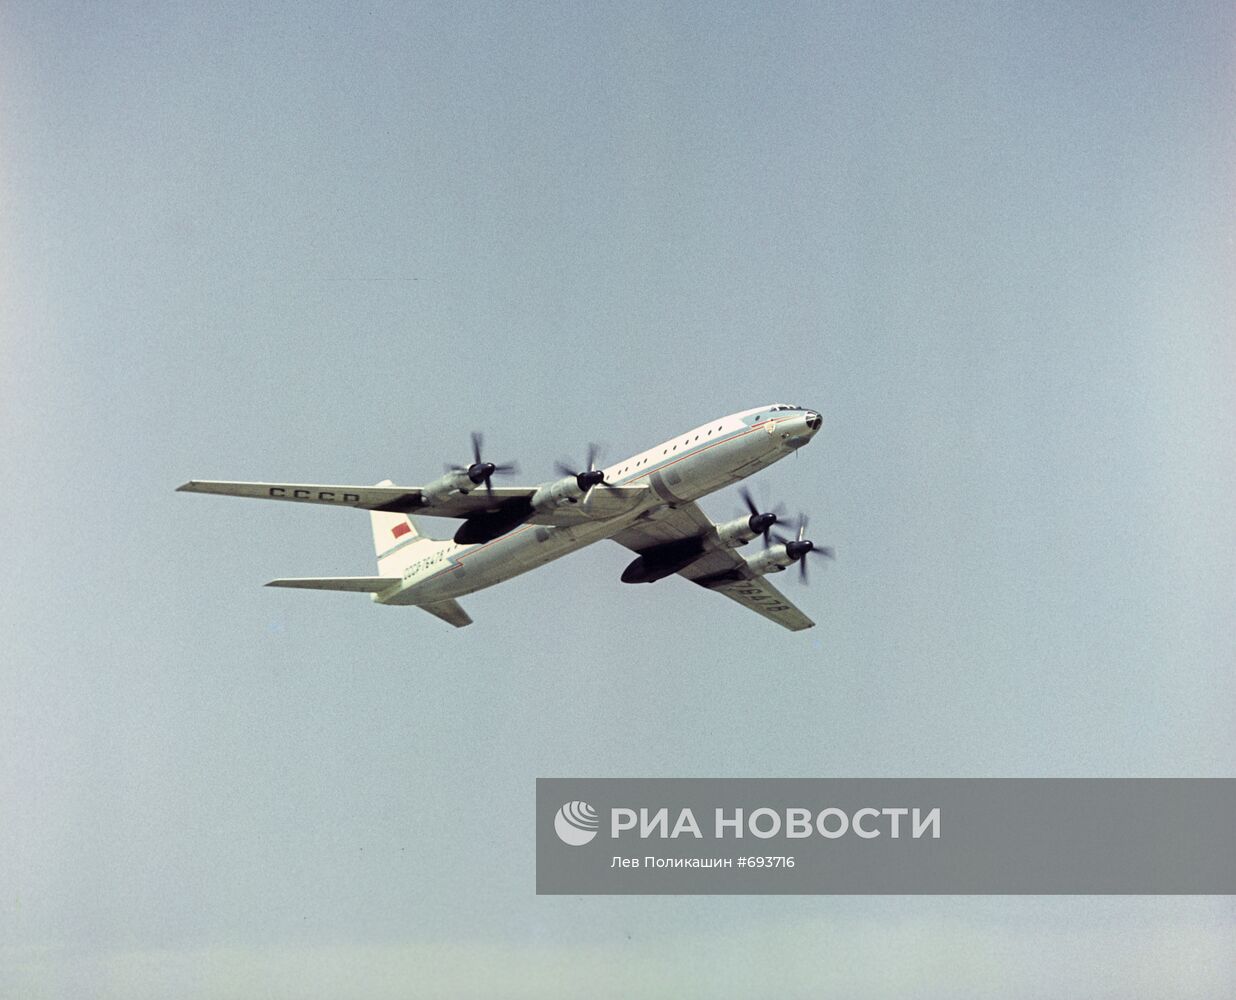 Пассажирский самолет Ту-114